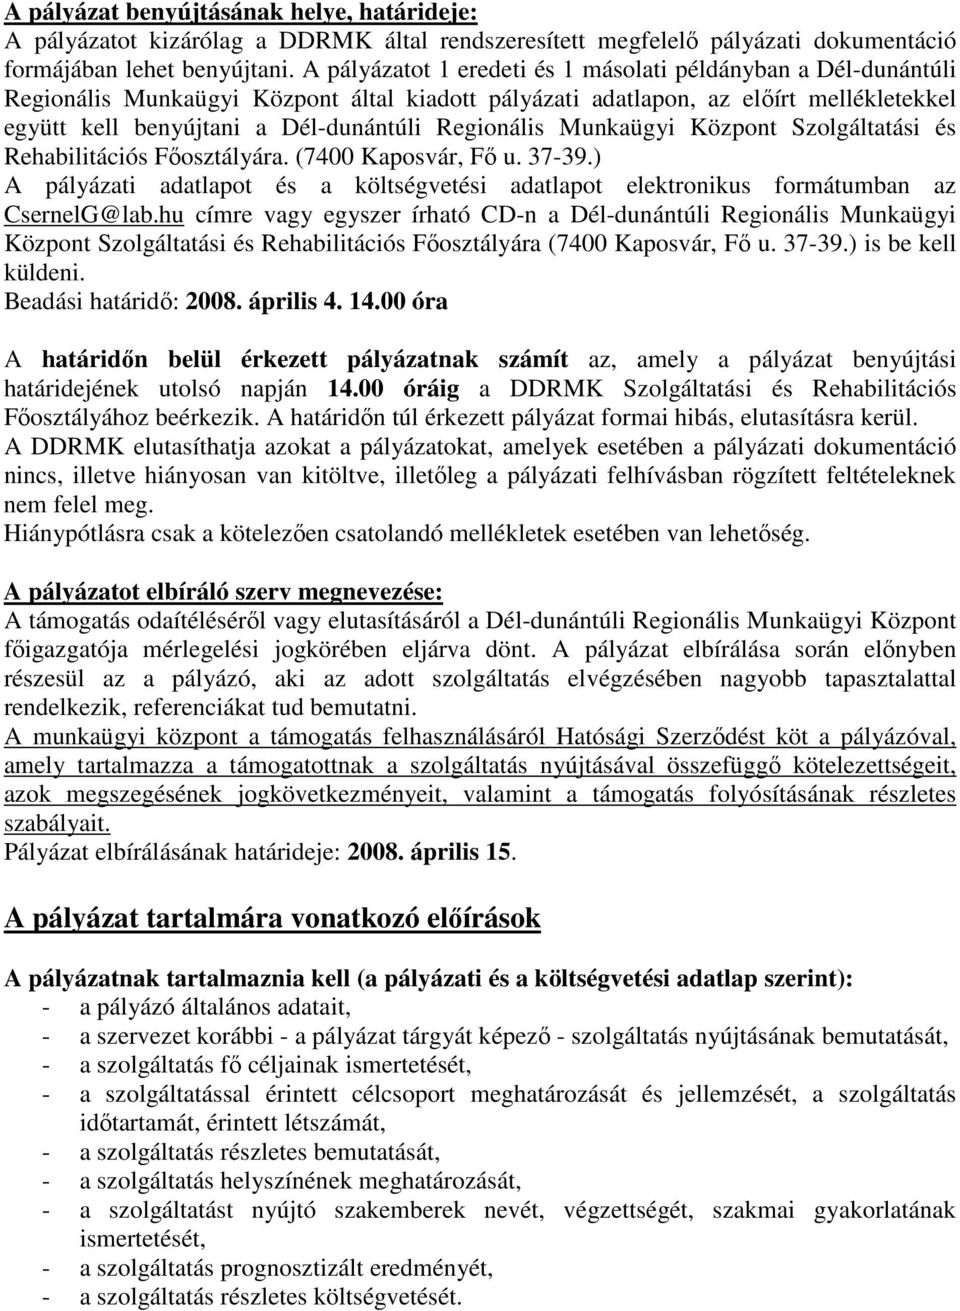 Regionális Munkaügyi Központ Szolgáltatási és Rehabilitációs Fıosztályára. (7400 Kaposvár, Fı u. 37-39.) A pályázati adatlapot és a költségvetési adatlapot elektronikus formátumban az CsernelG@lab.